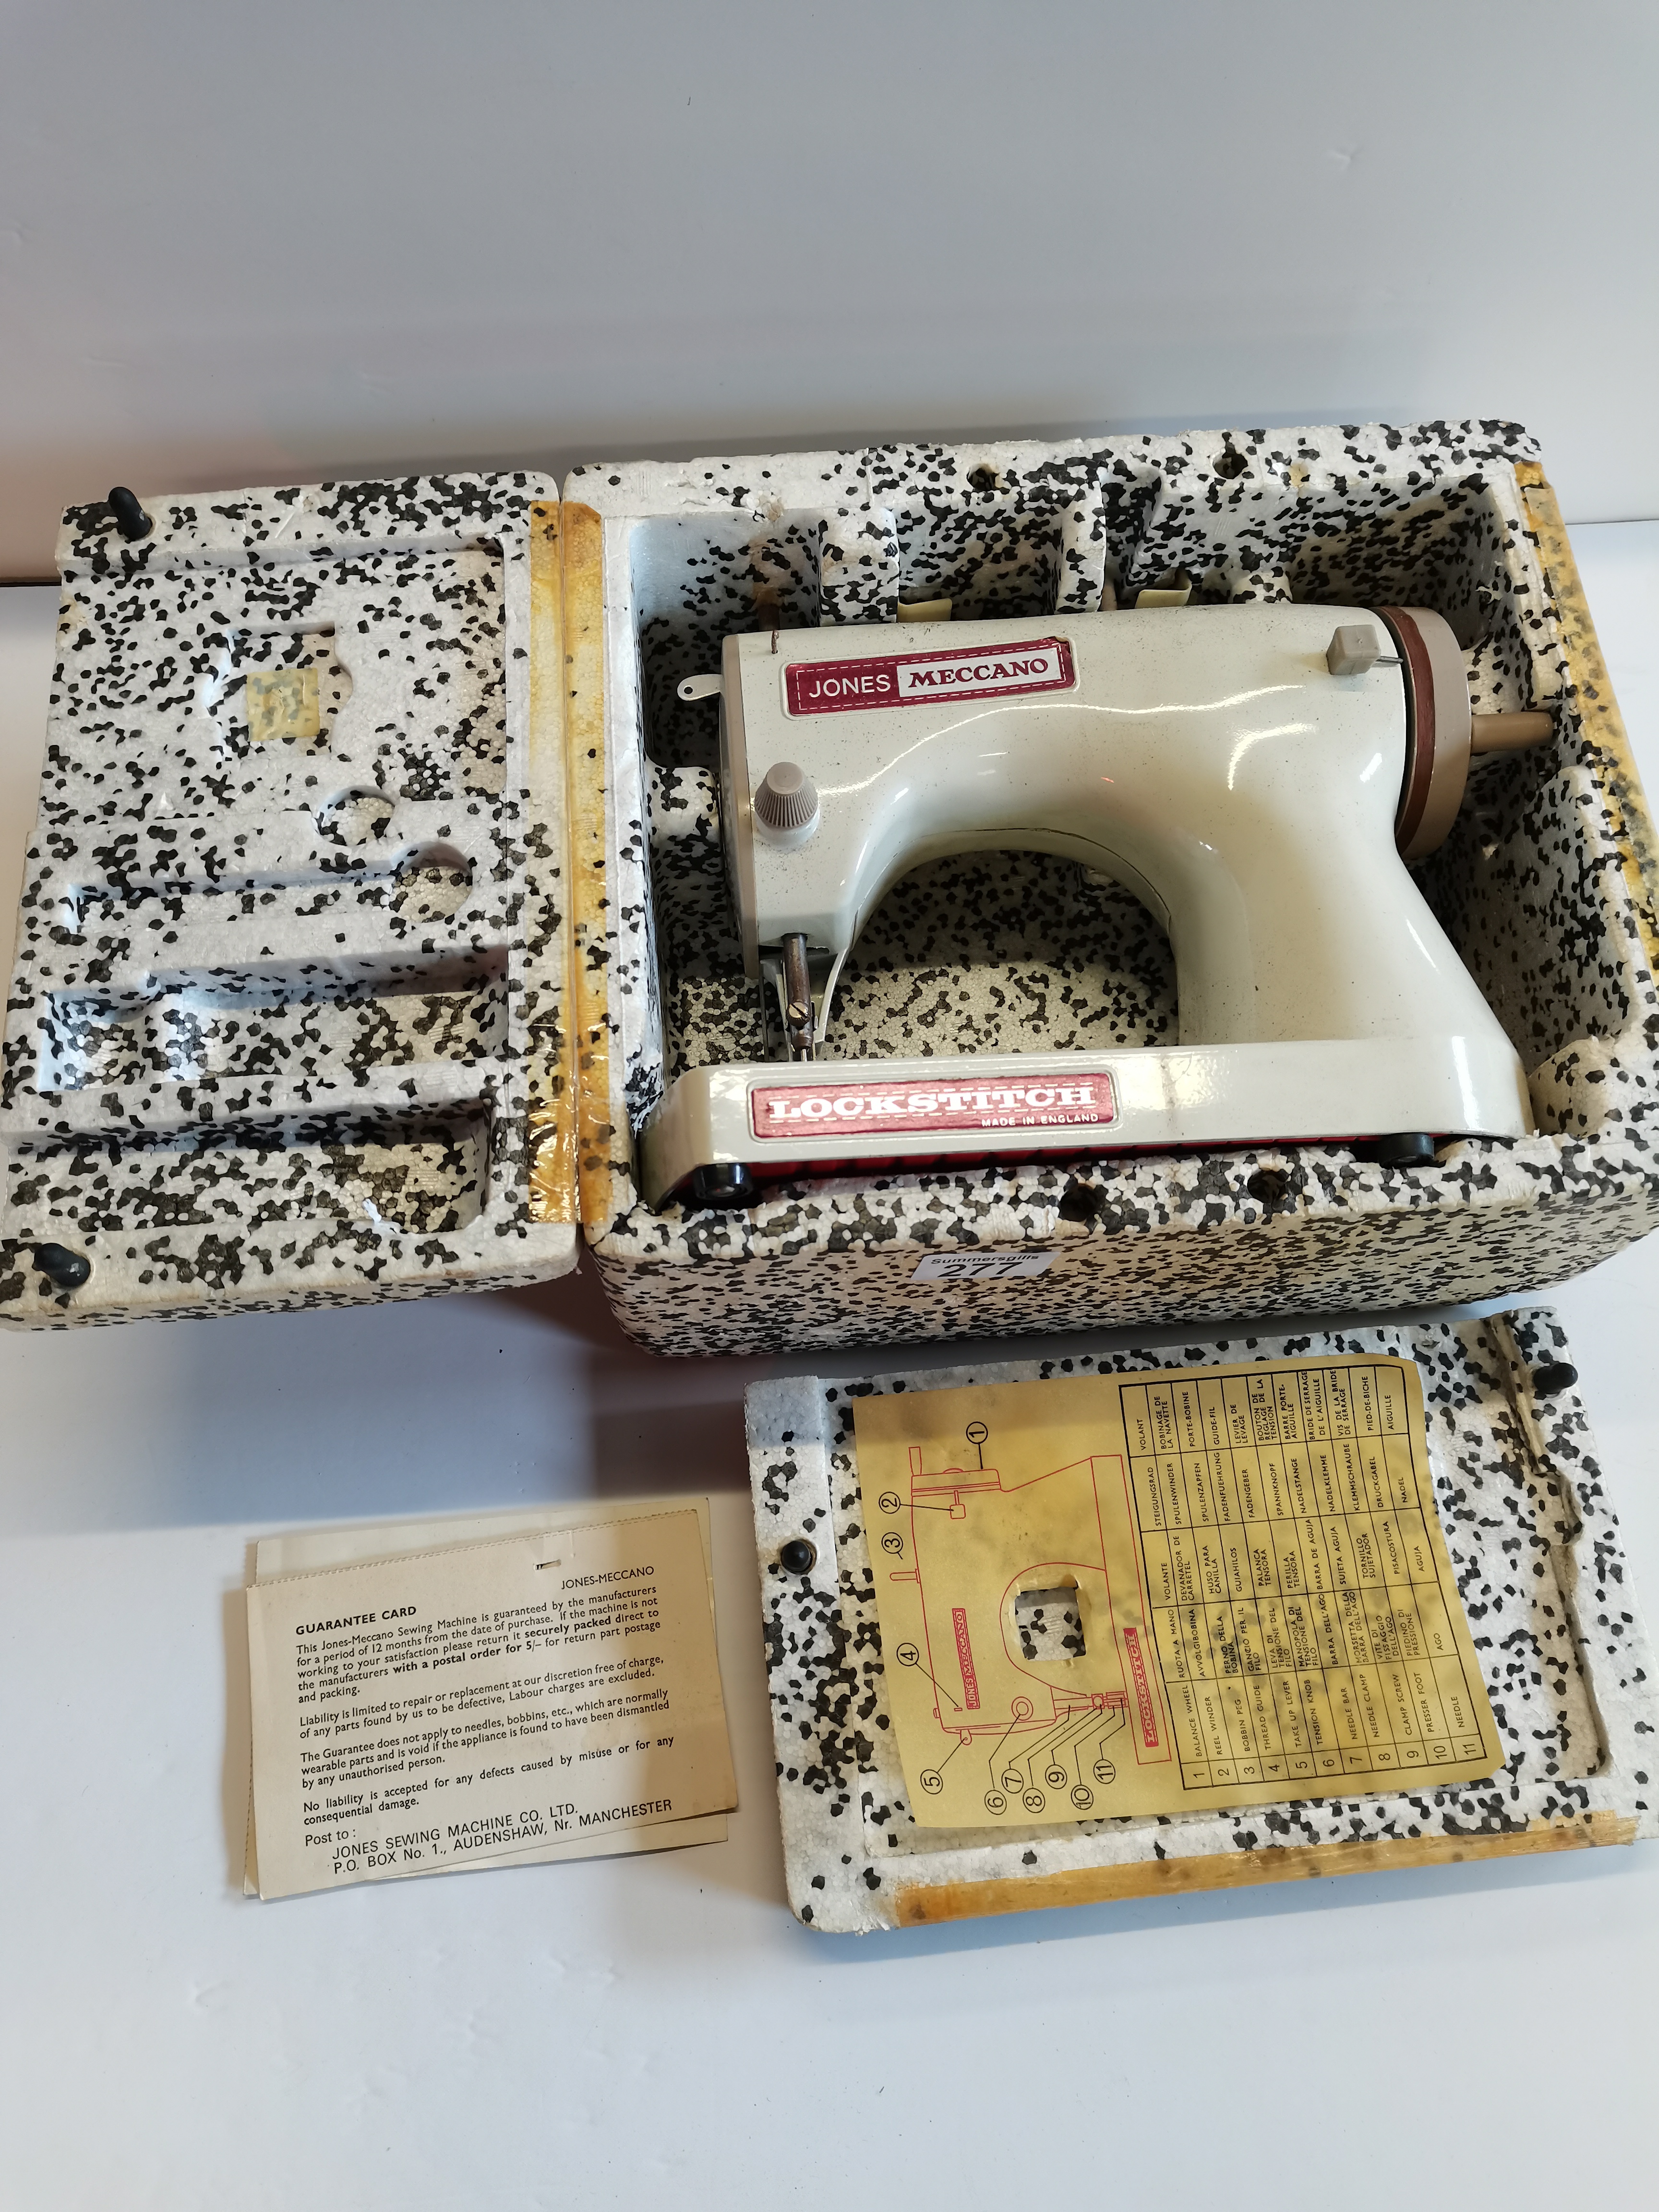 Jones Meccano Locksmith sewing machine - Image 2 of 2